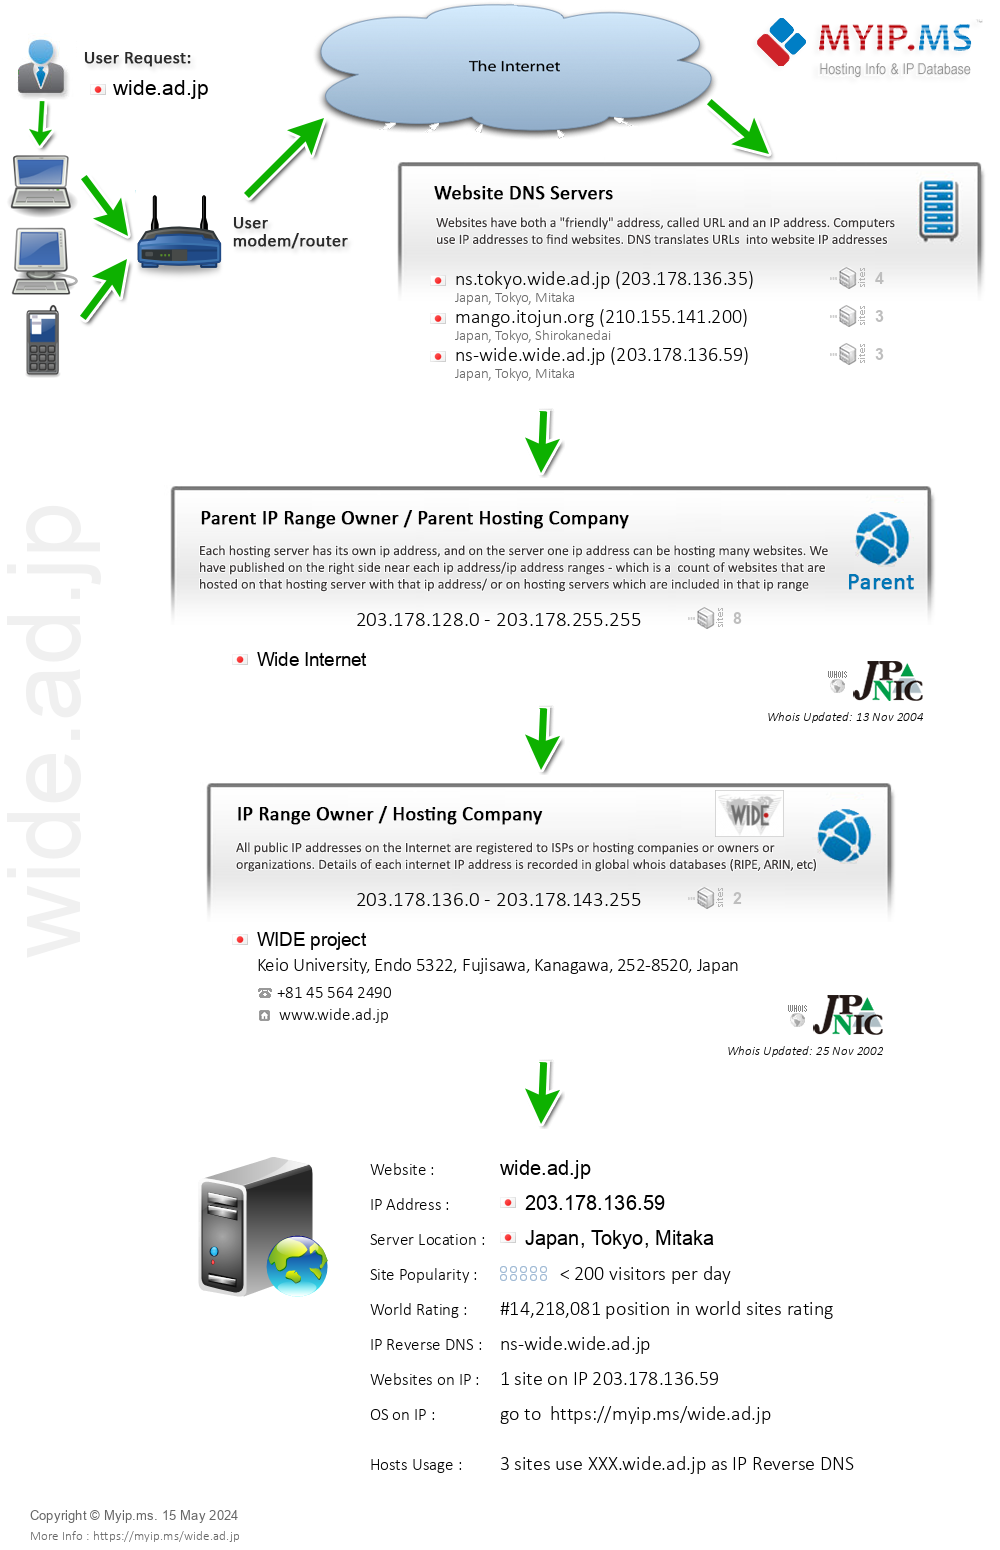 Wide.ad.jp - Website Hosting Visual IP Diagram